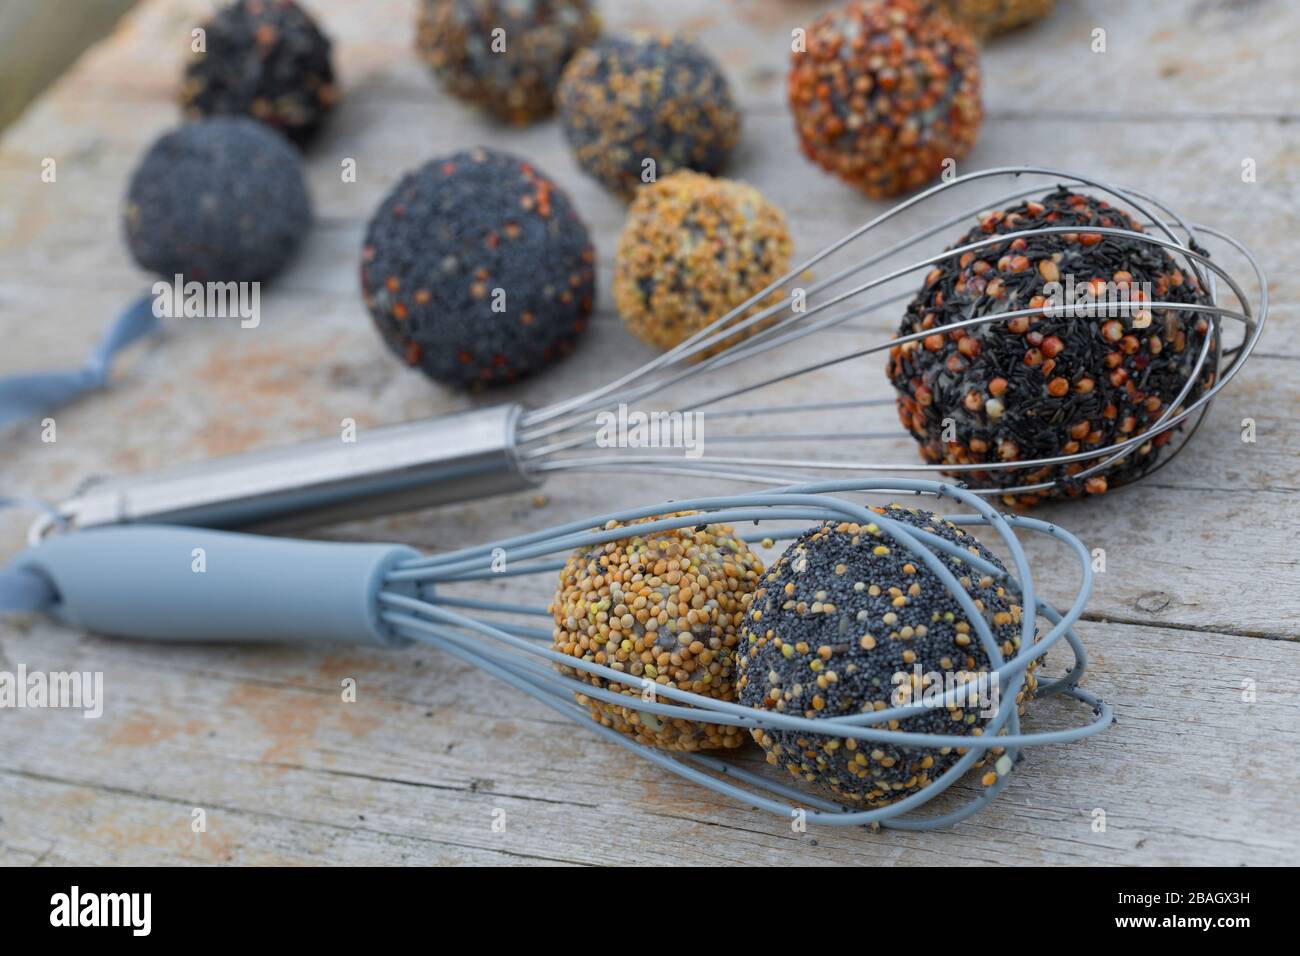 Bolas de grasa de aves hechas a sí mismas en muelles de alambre, Alemania Foto de stock